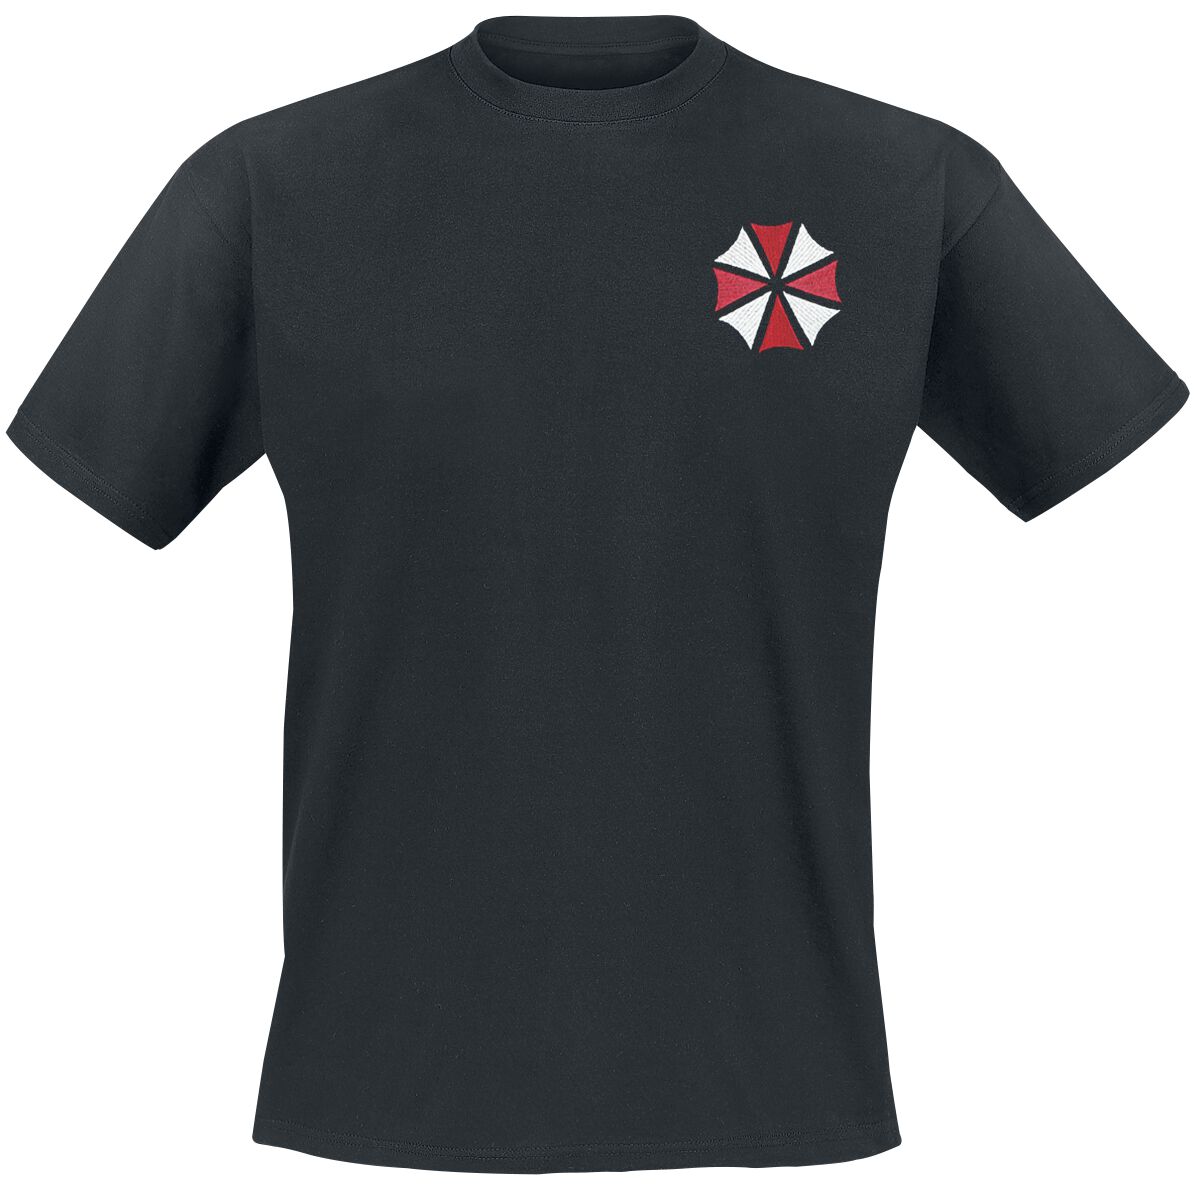 Resident Evil - Gaming T-Shirt - Umbrella Co. - Our Business Is Life Itself - L bis XXL - für Männer - Größe XL - schwarz